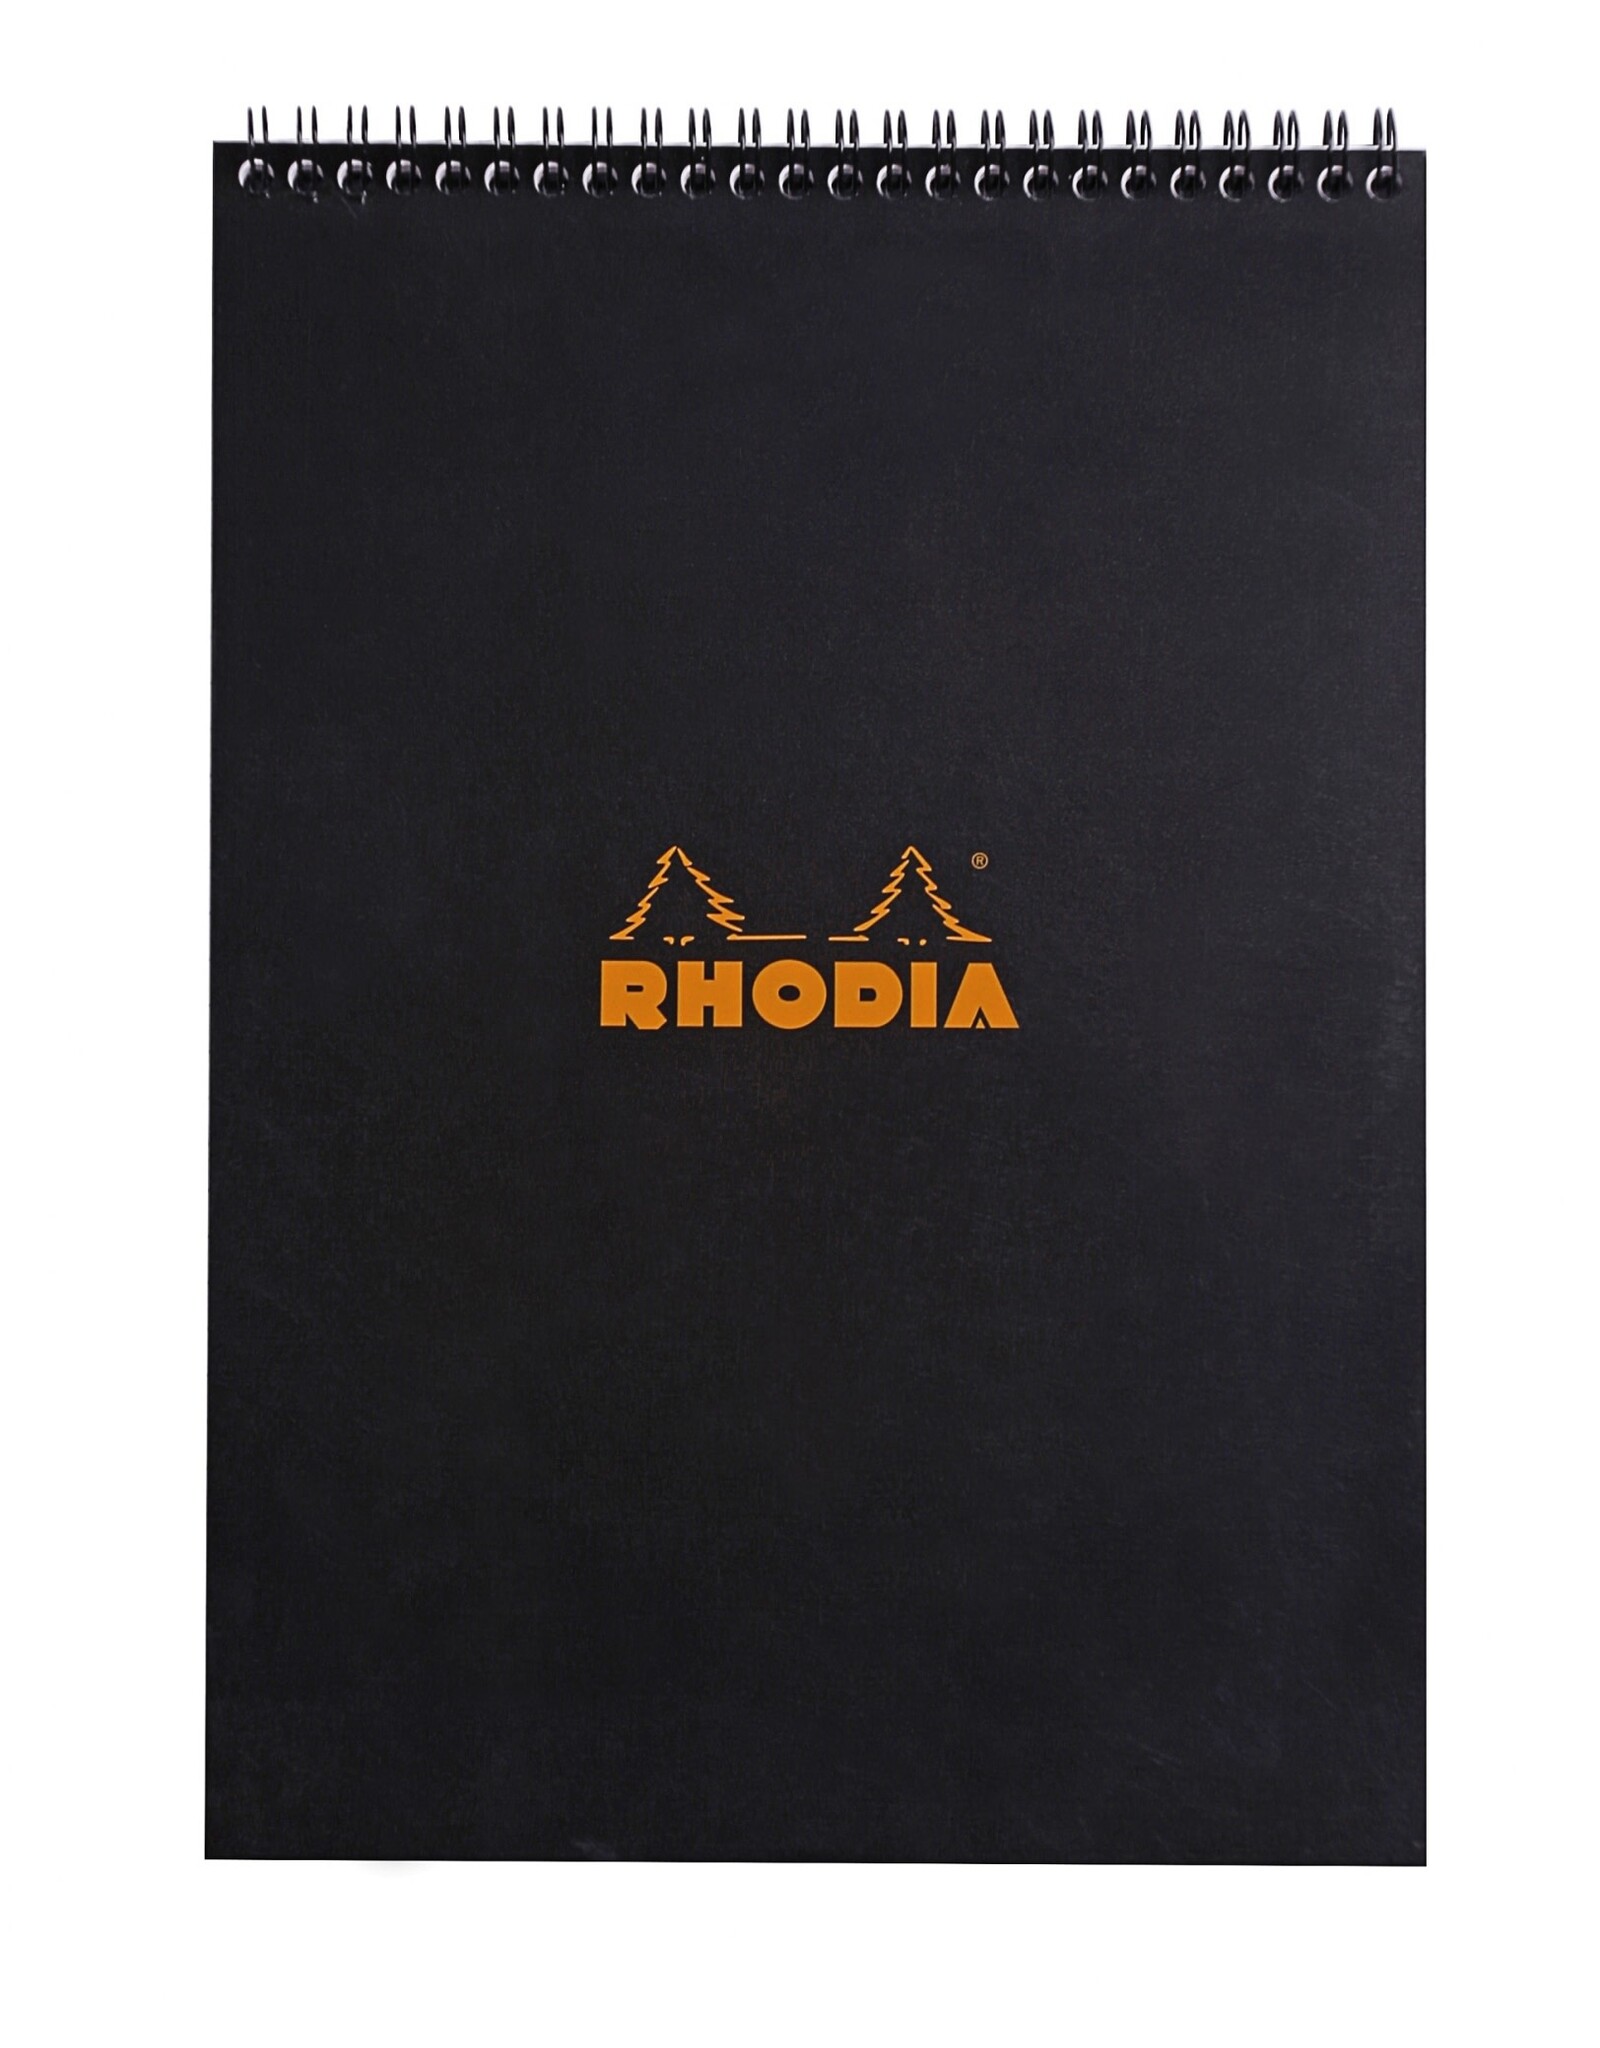 Rhodia Rhodia Wirebound Notepad, 80 Graph Sheets, 8 1/4" x 11 3/4", Black